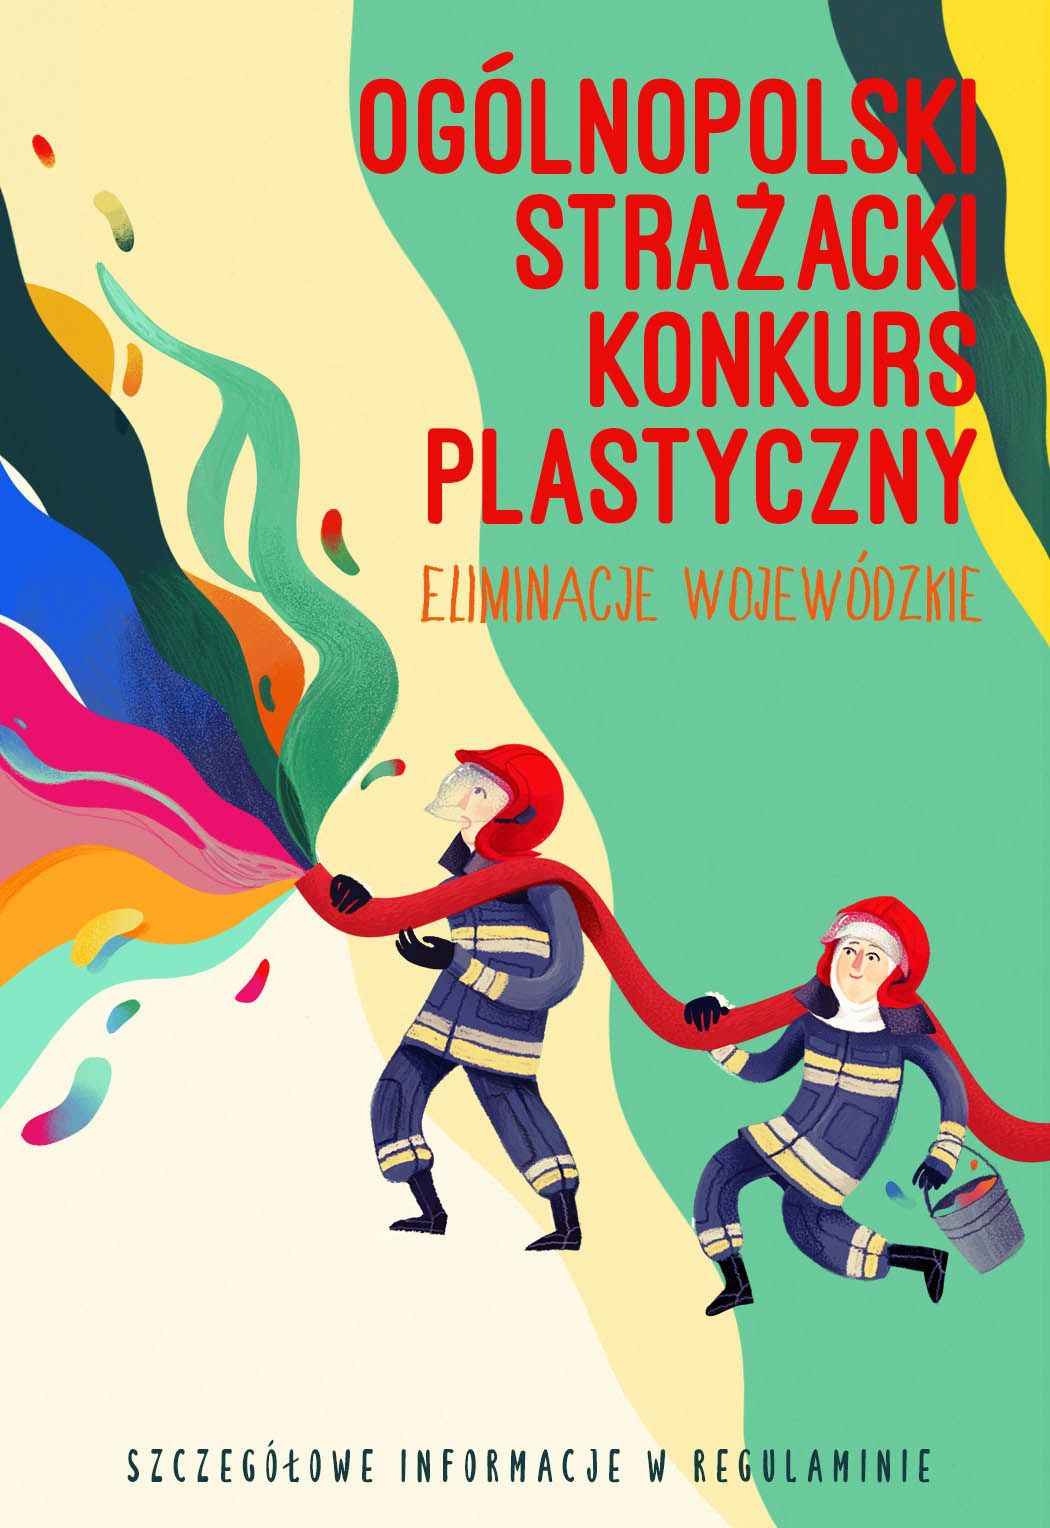 ogolnopolski-strazacki-konkurs-plastyczny